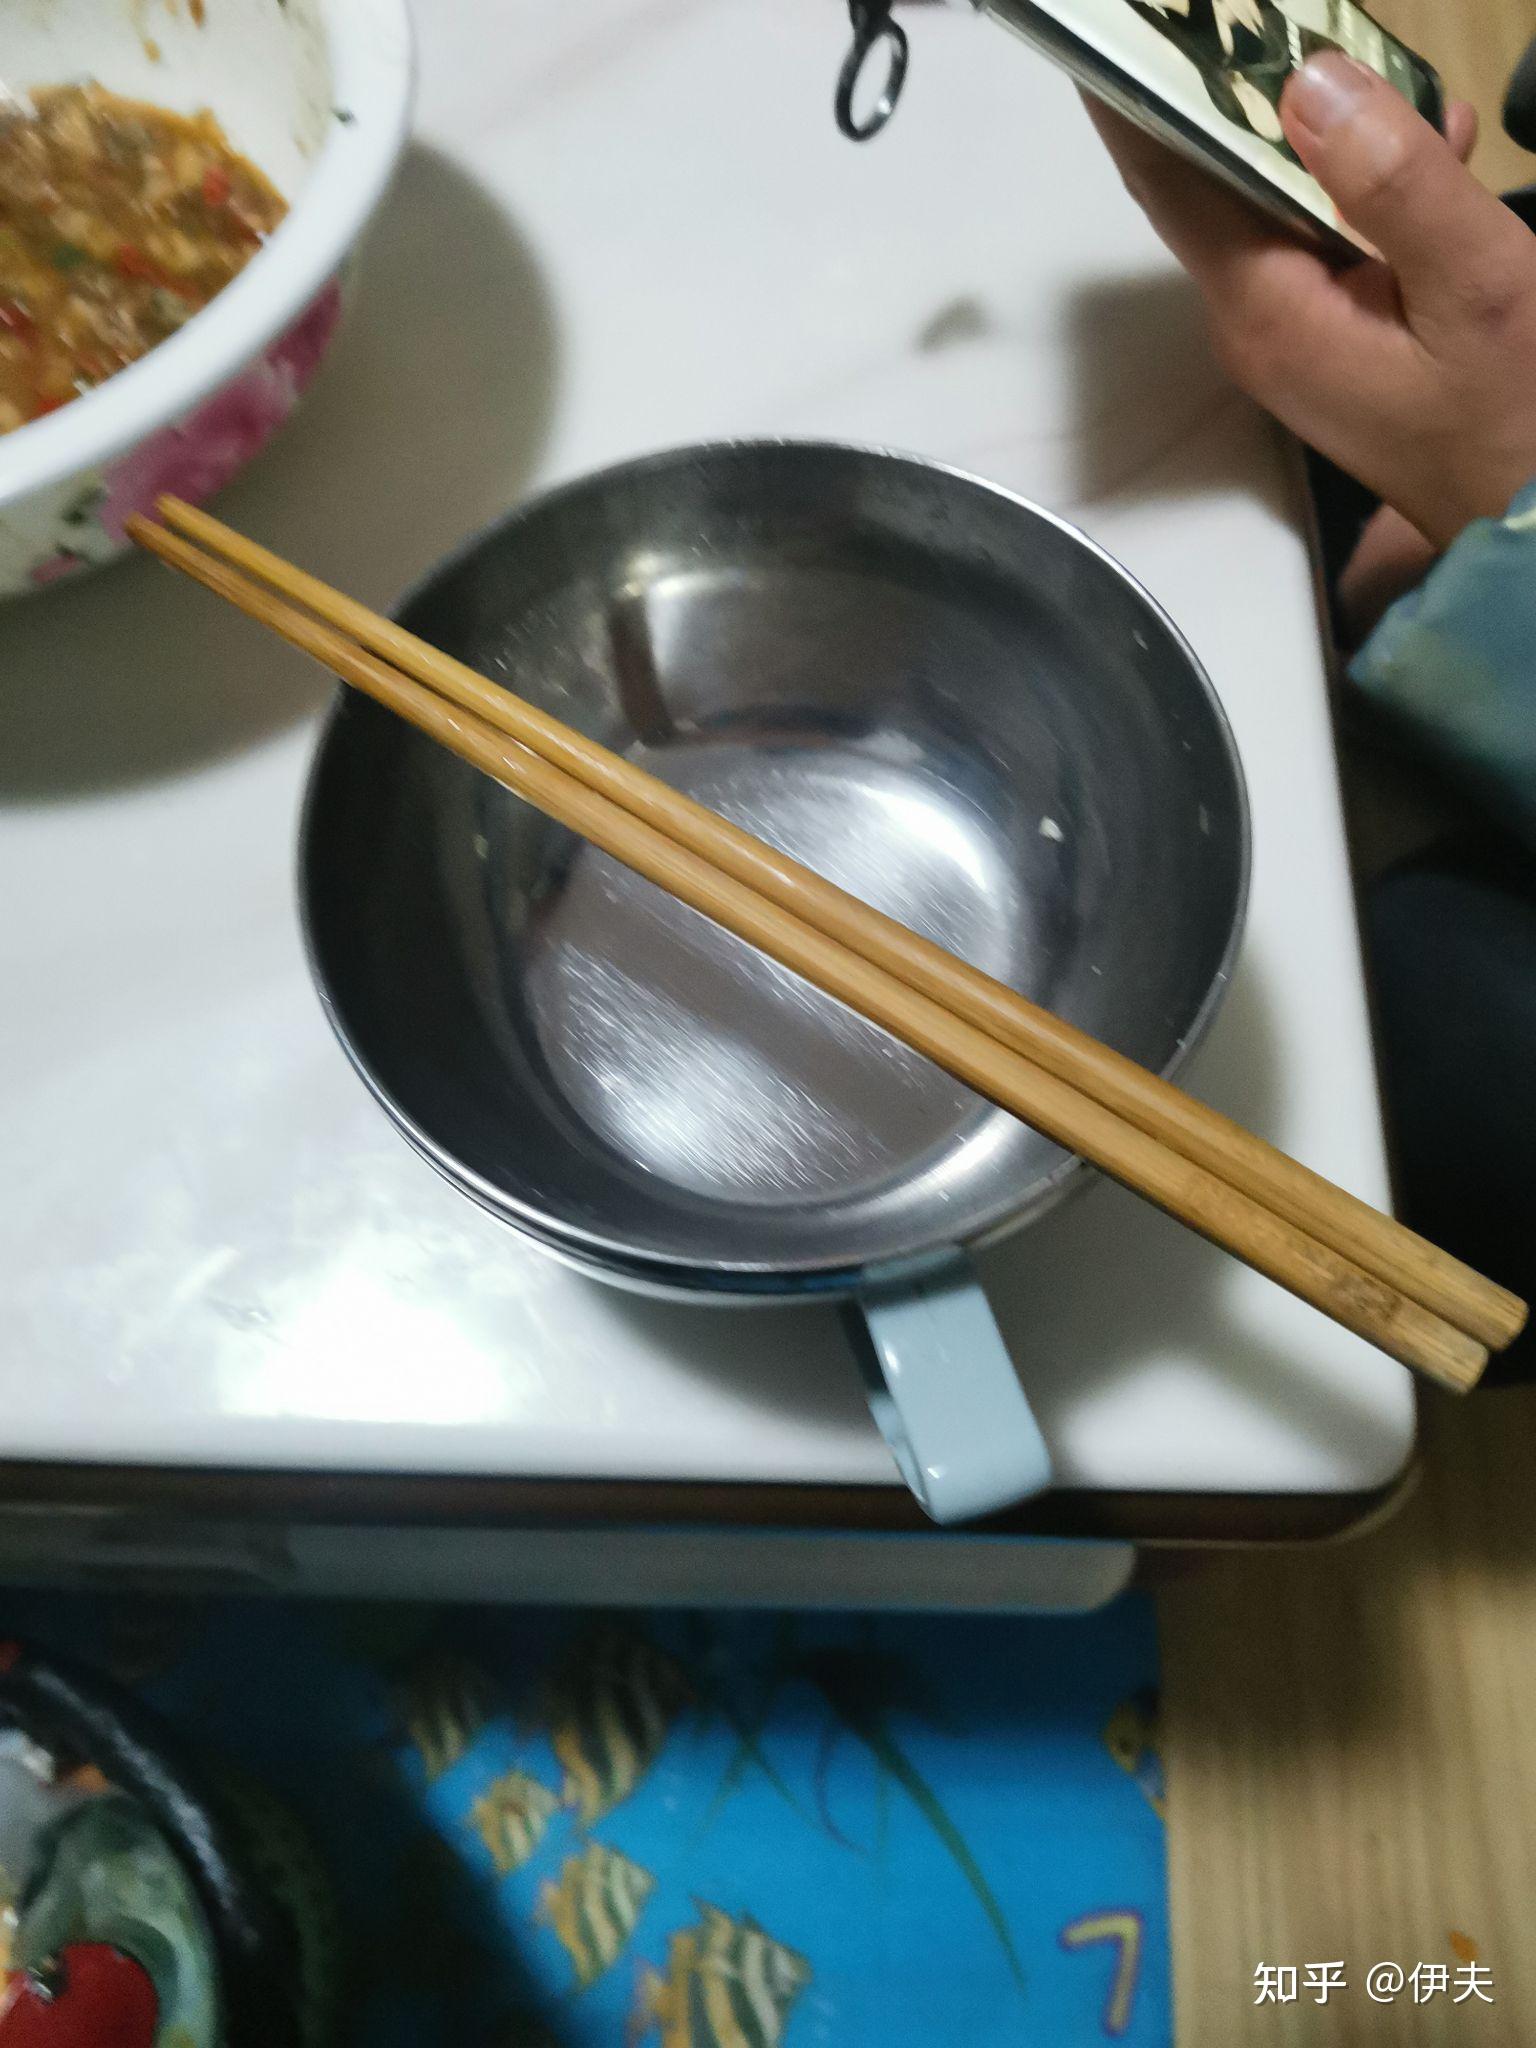 为什么日本人用餐时筷子是横着放的呢？_中国